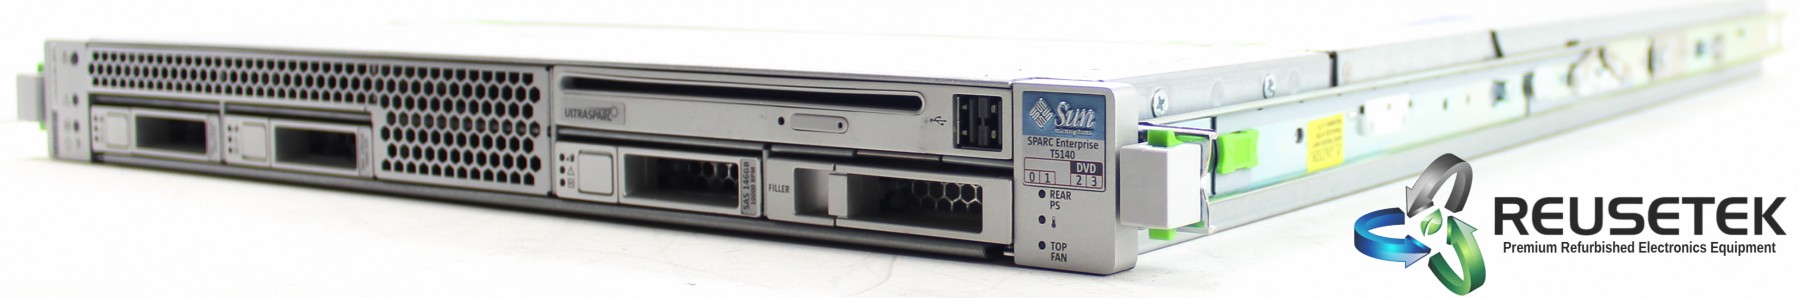 50002715-Sun Sparc Enterprise Microsystems T5140 SETPBGE1Z Server (Dual 1.2GHz 6 Core Processors)-image